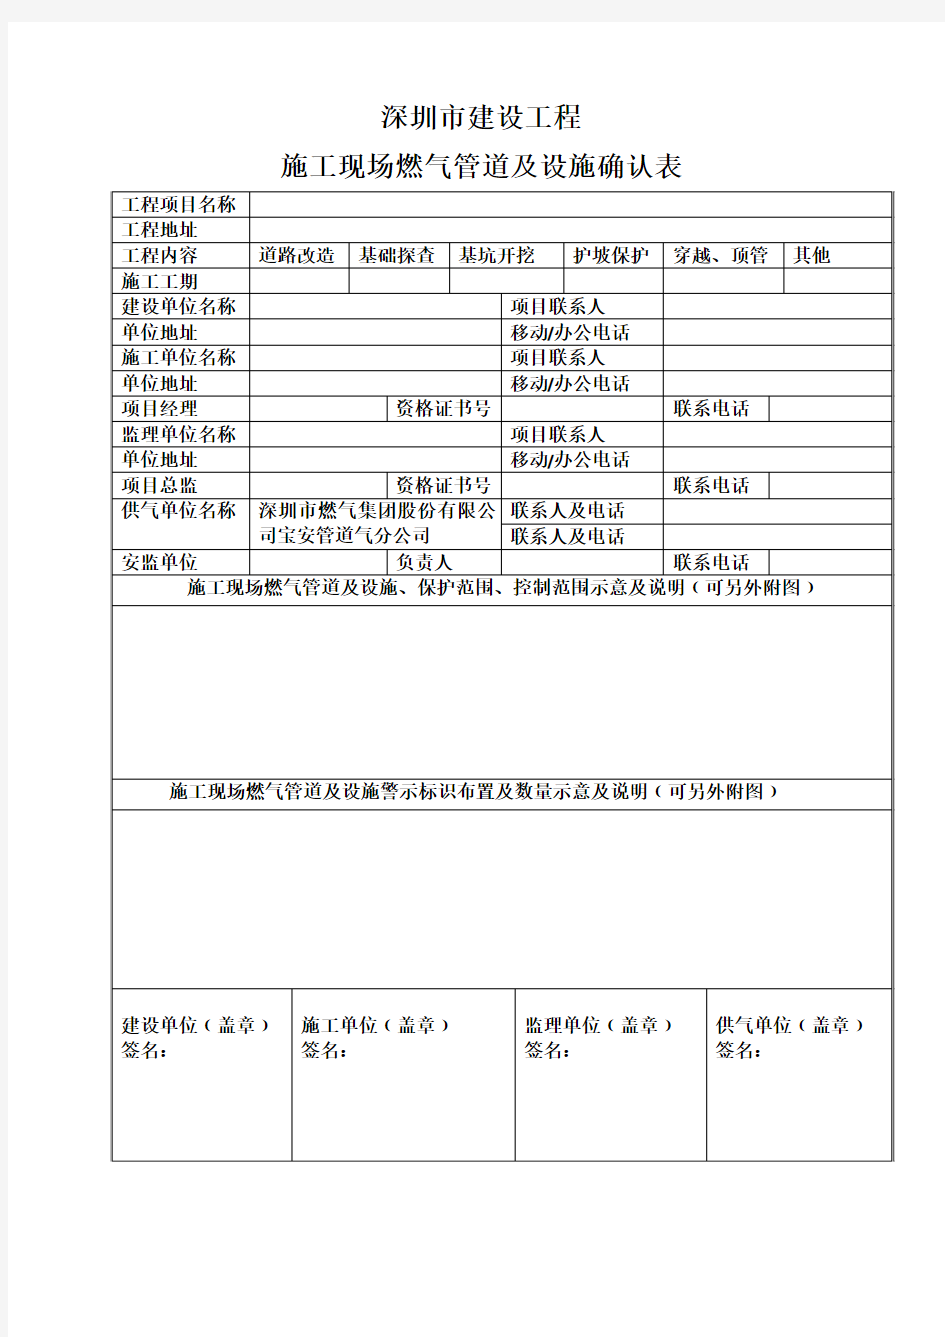 深圳市施工现场燃气管道及设施确认表